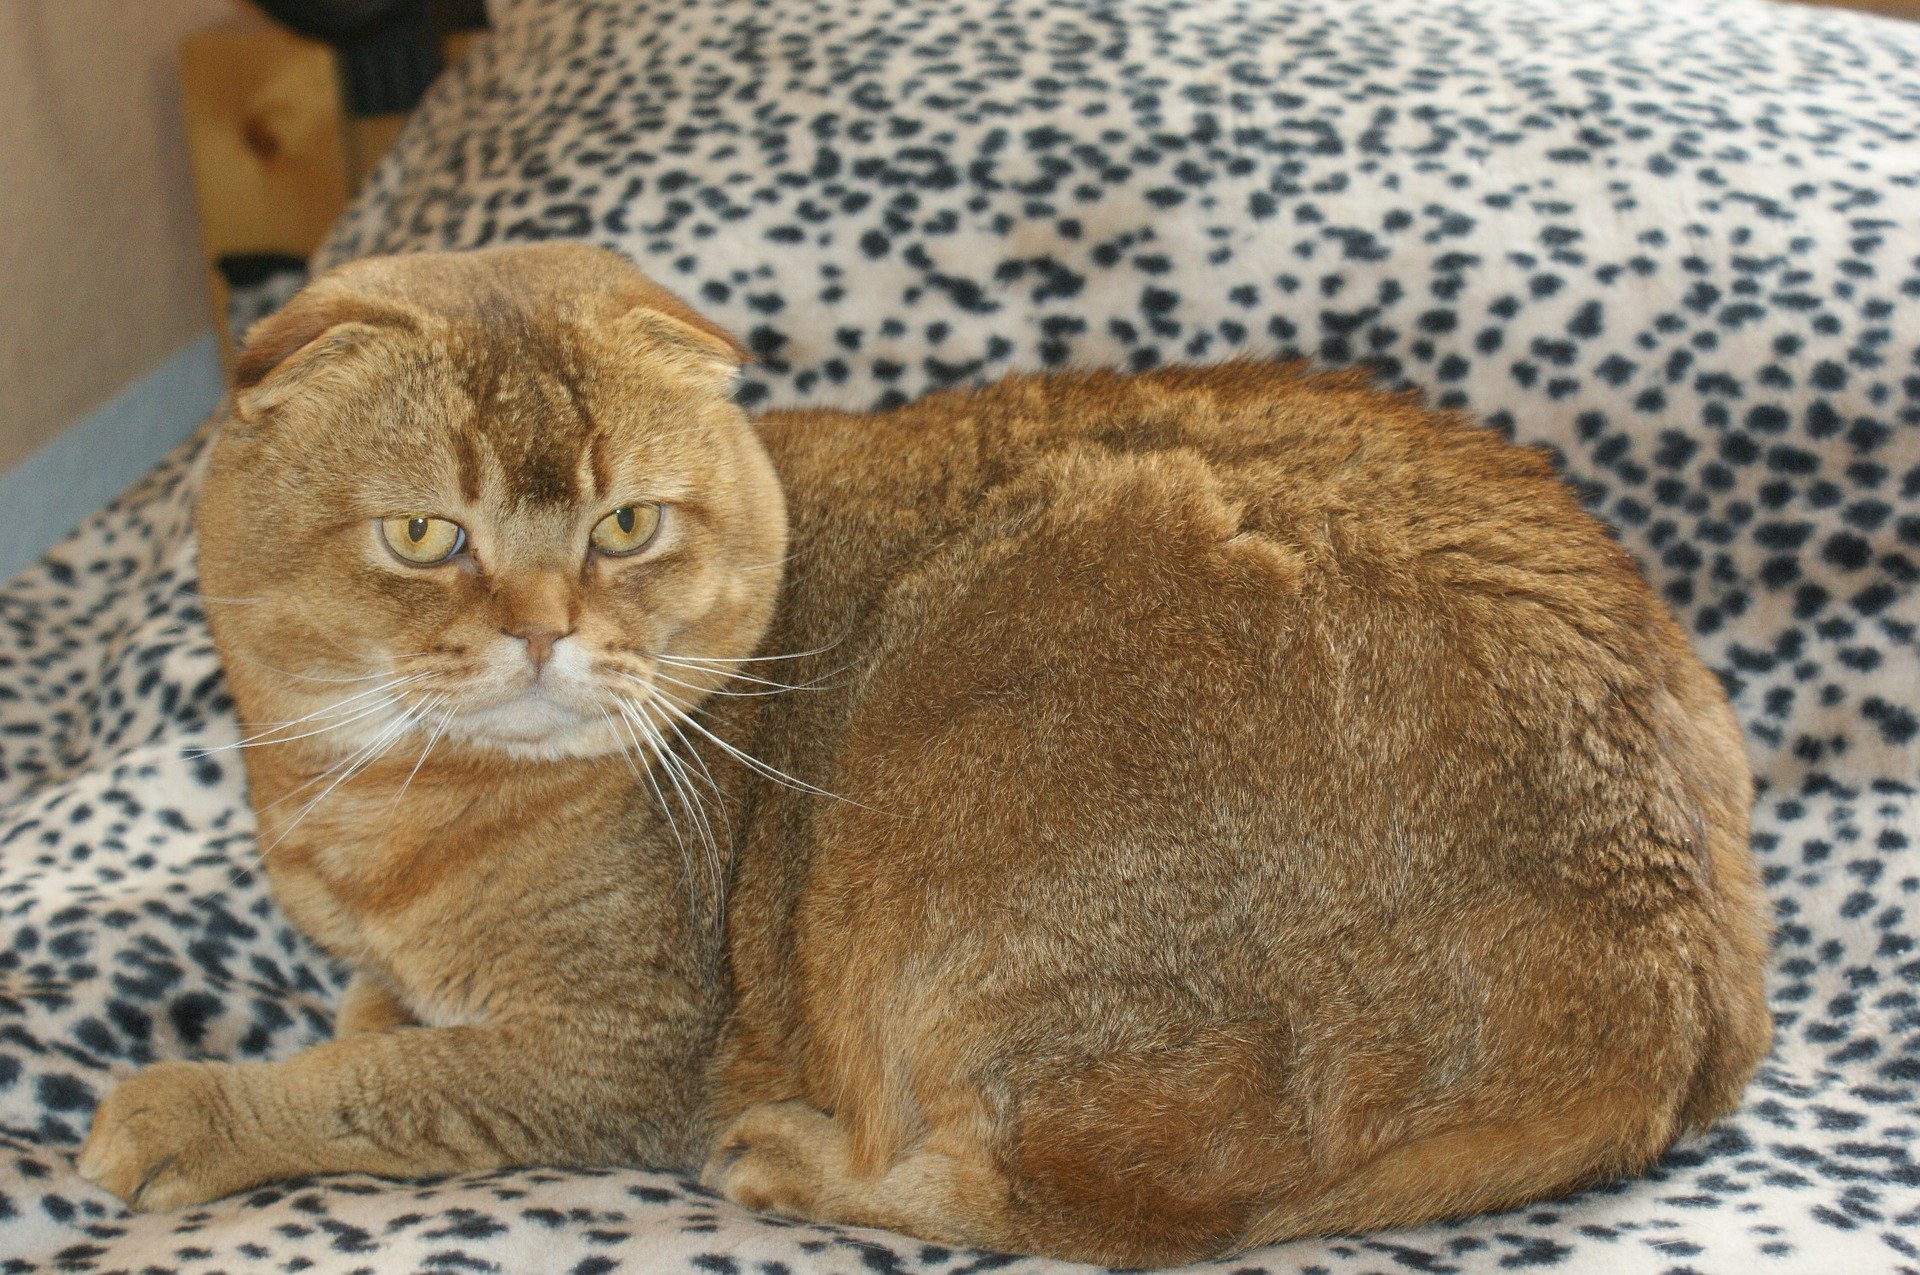 Il gatto Scottish Fold è di taglia media e ha orecchie insolite. Sono piccole, arrotondate e distanziate tra loro.